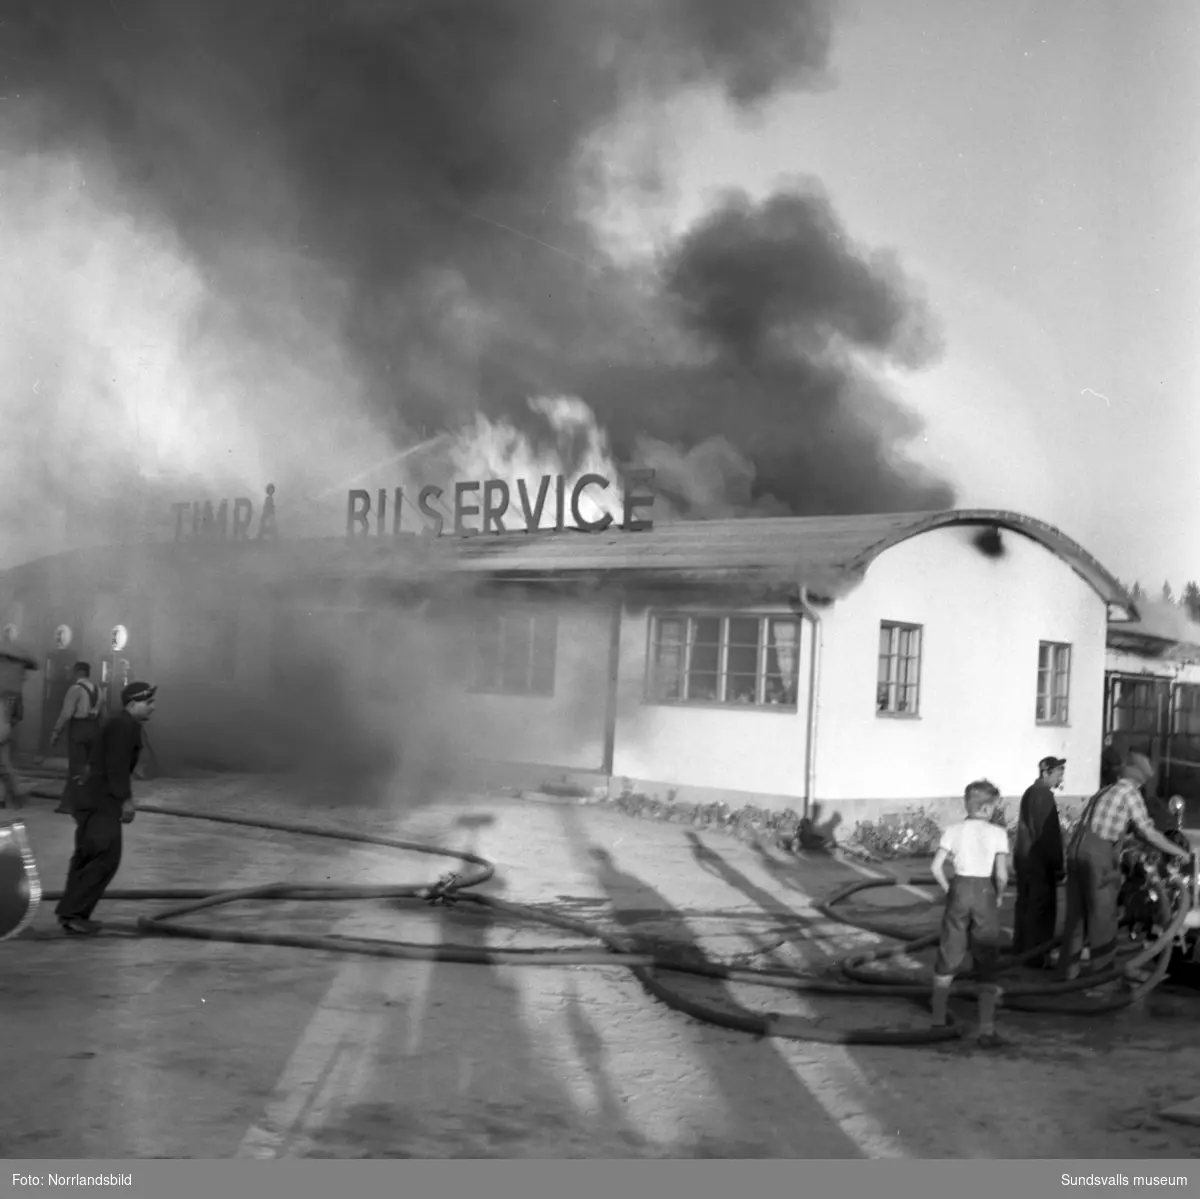 Timrå Bilservice brandhärjas 1953.